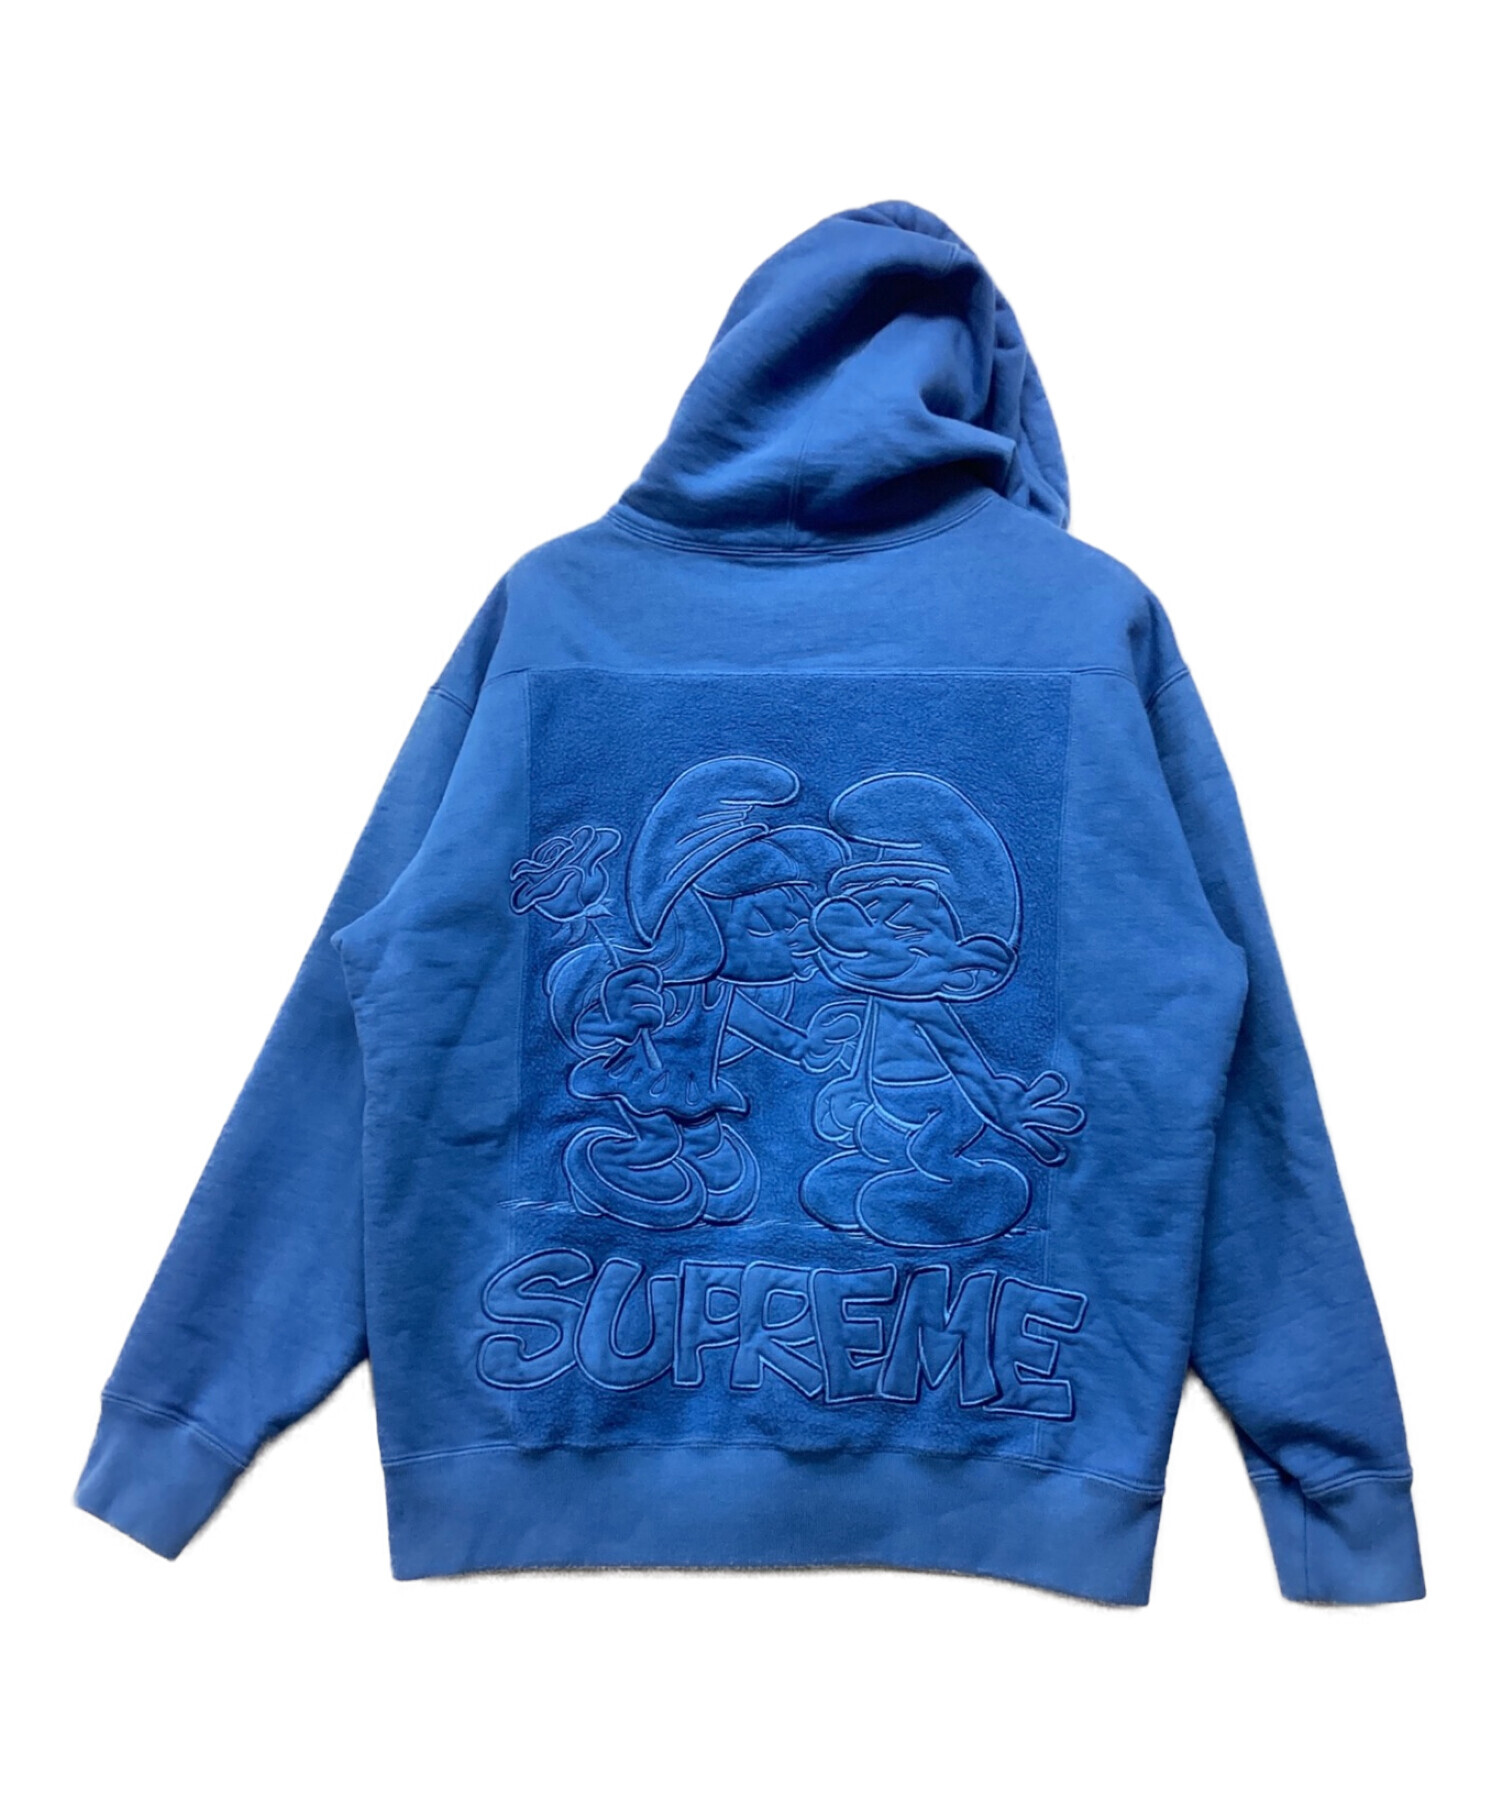 8,460円Supreme Smurfs Hooded Sweatshirt